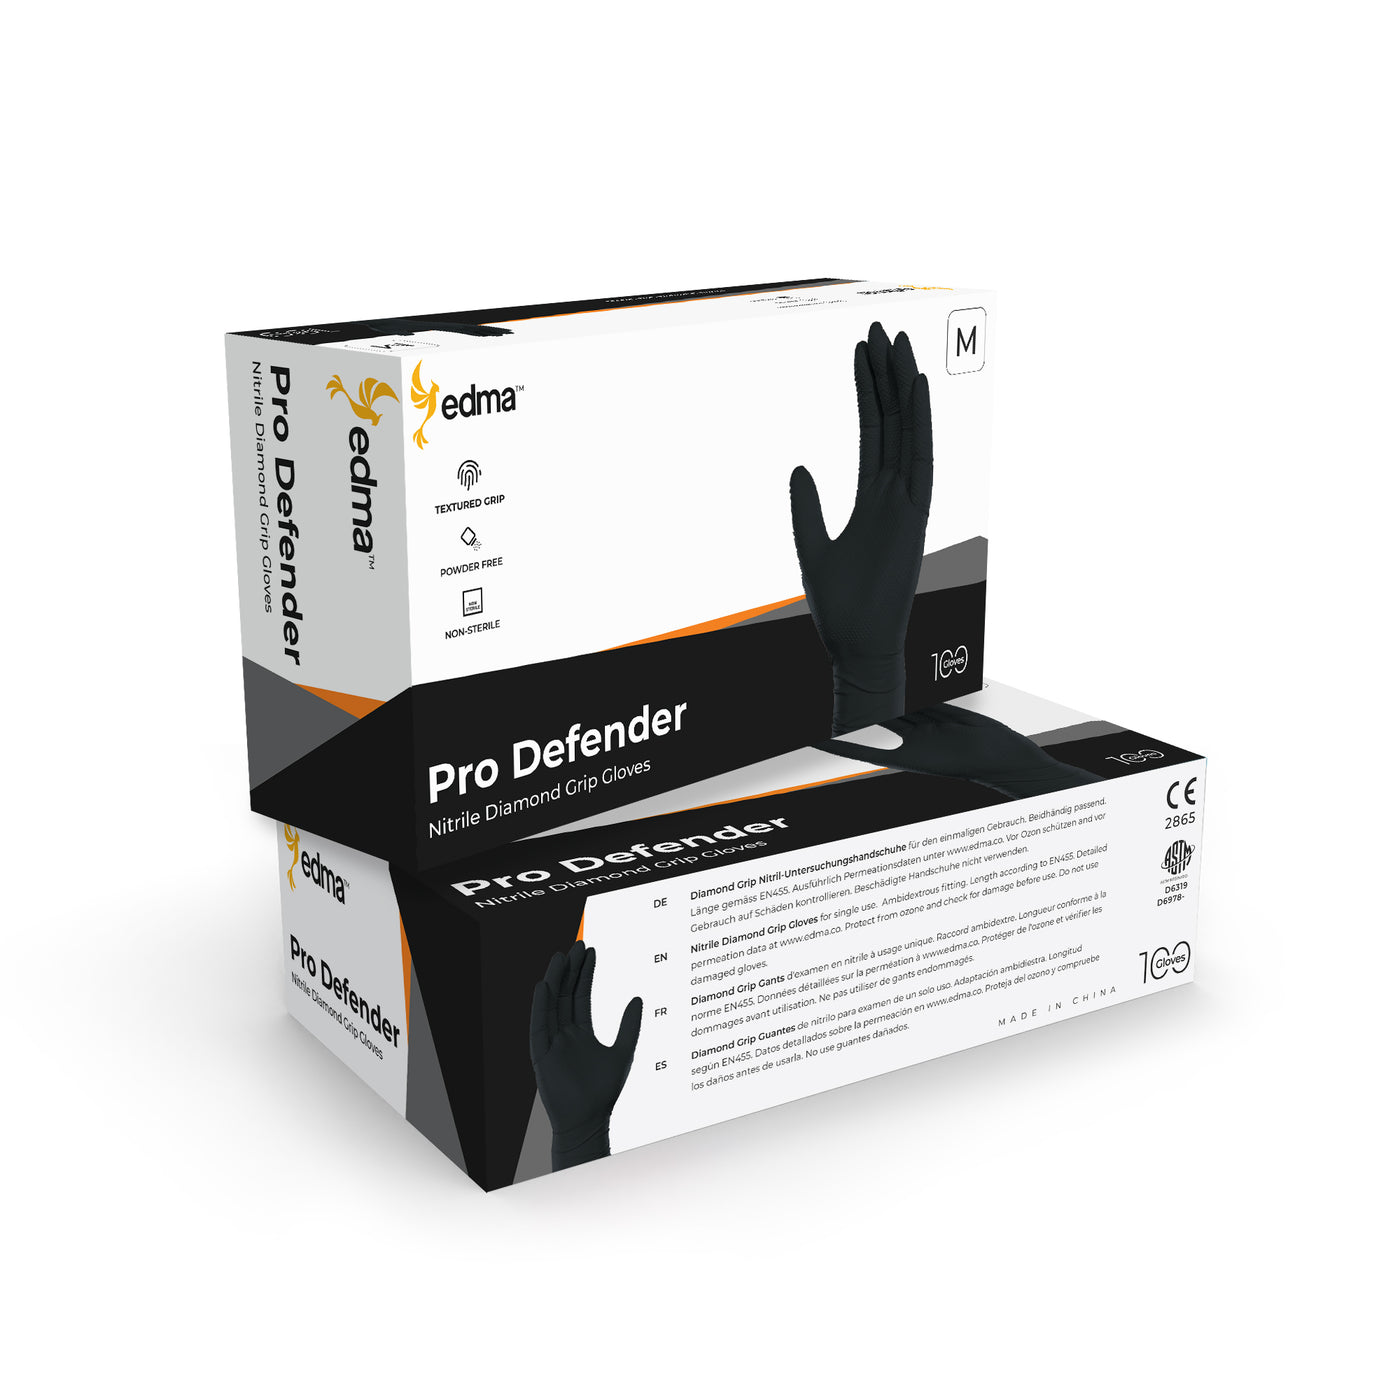 2 Boxes of Edma Pro Defender Black Nitrile Diamond Grip 9mil Gloves #color_black